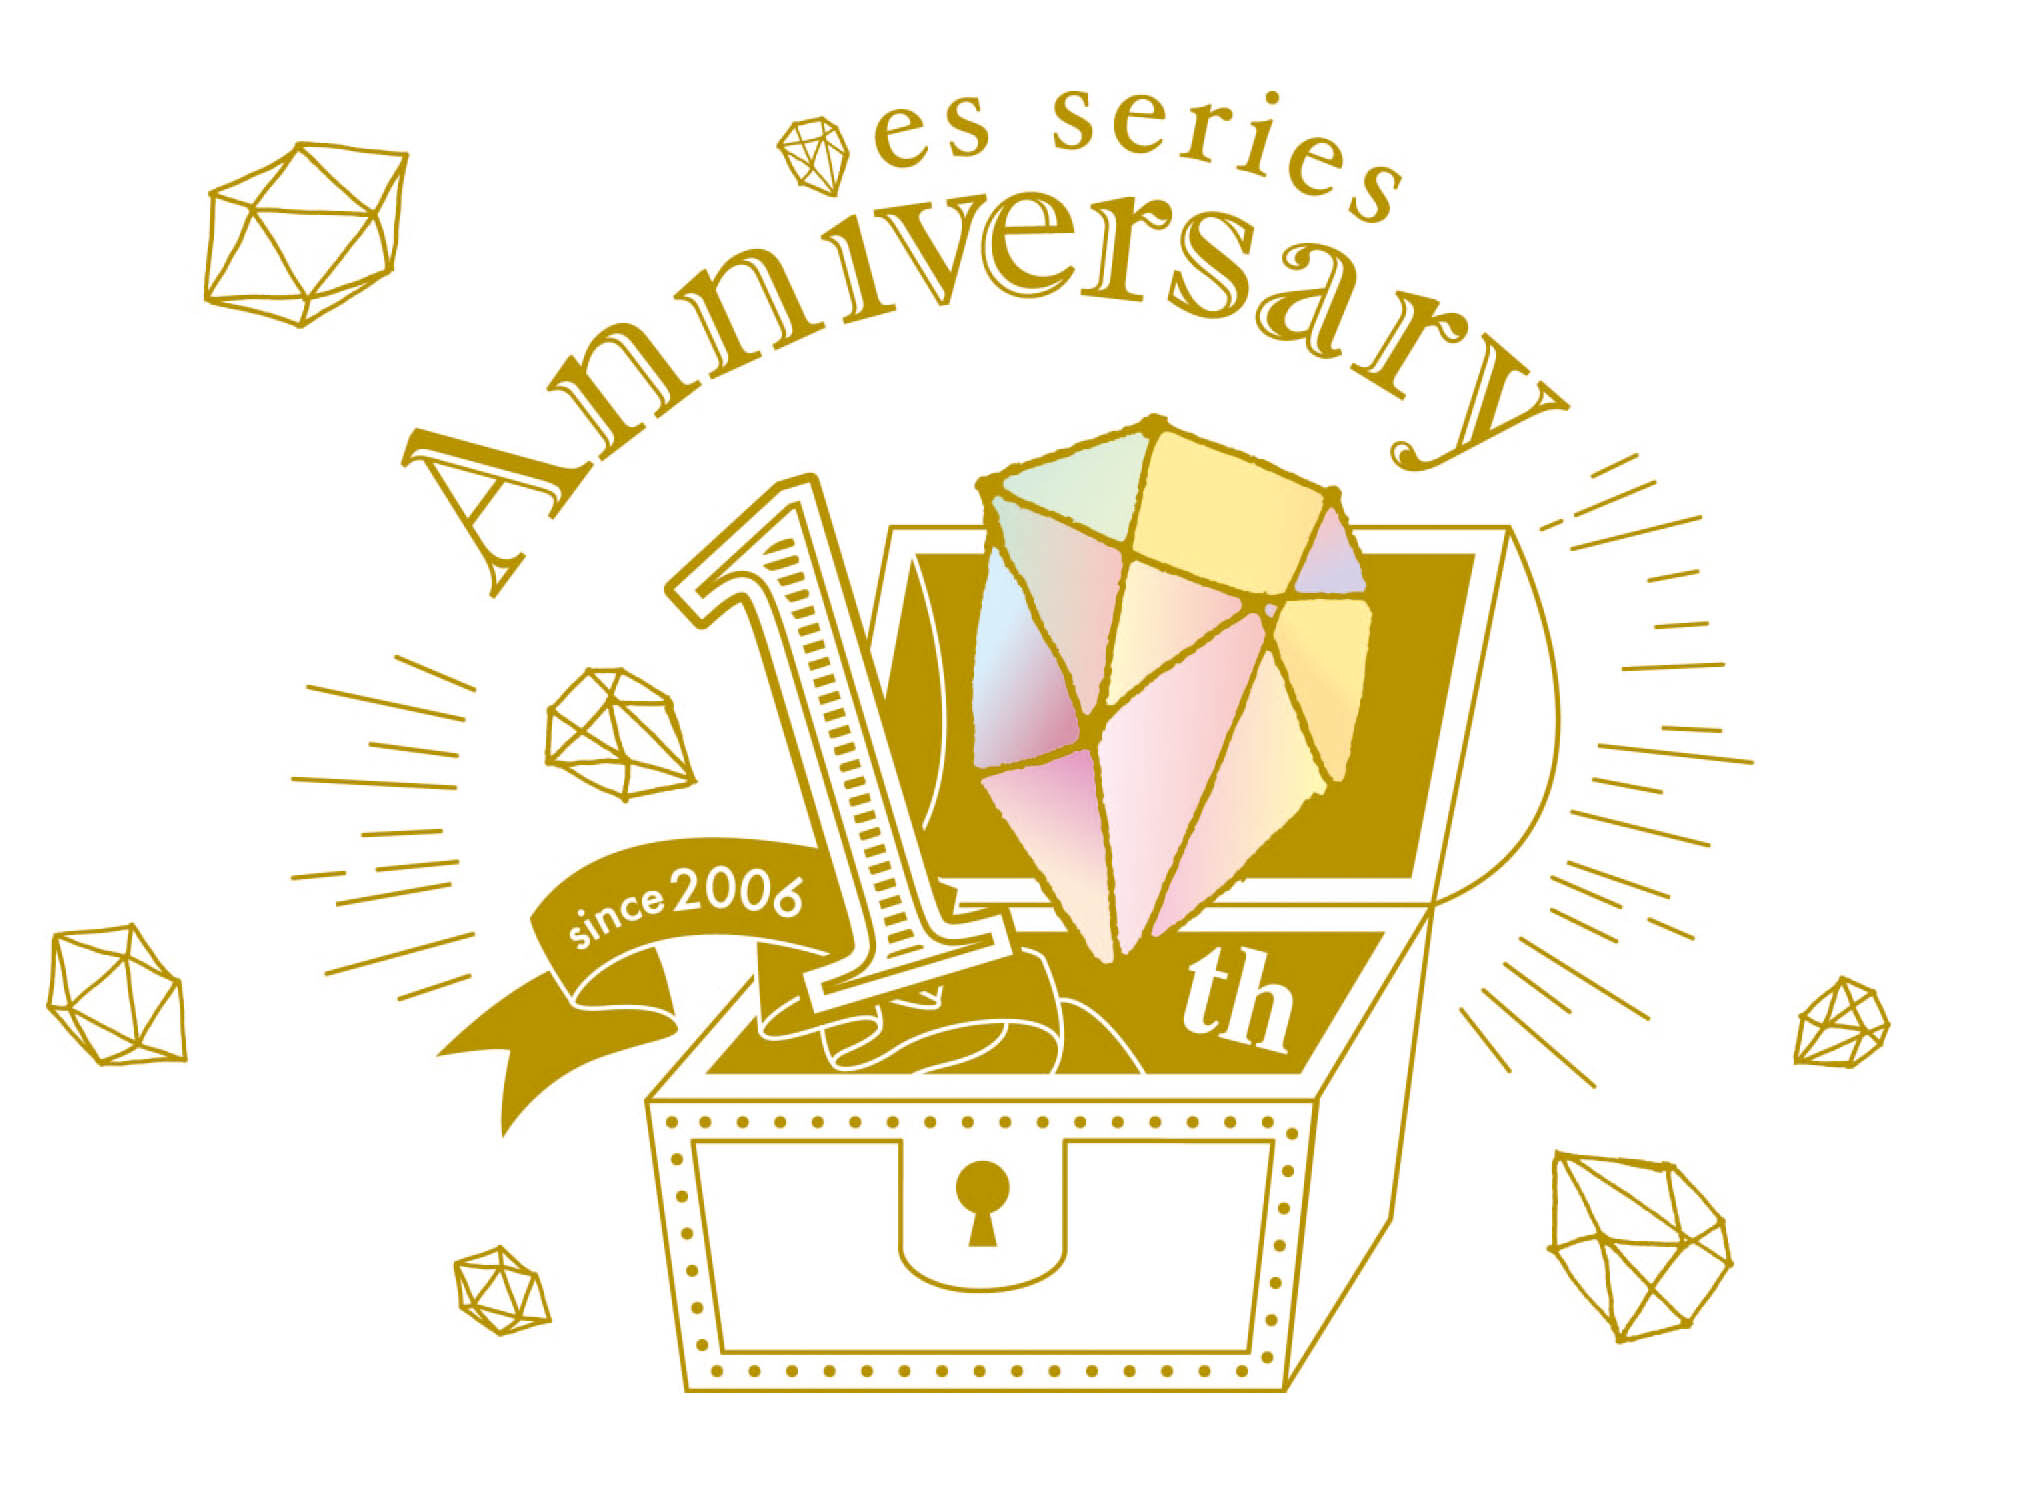 コトブキヤの女性向けグッズブランド Es エス シリーズ 10周年記念サイトがオープン 特別企画第1弾として イベントの開催も決定 株式会社壽屋のプレスリリース